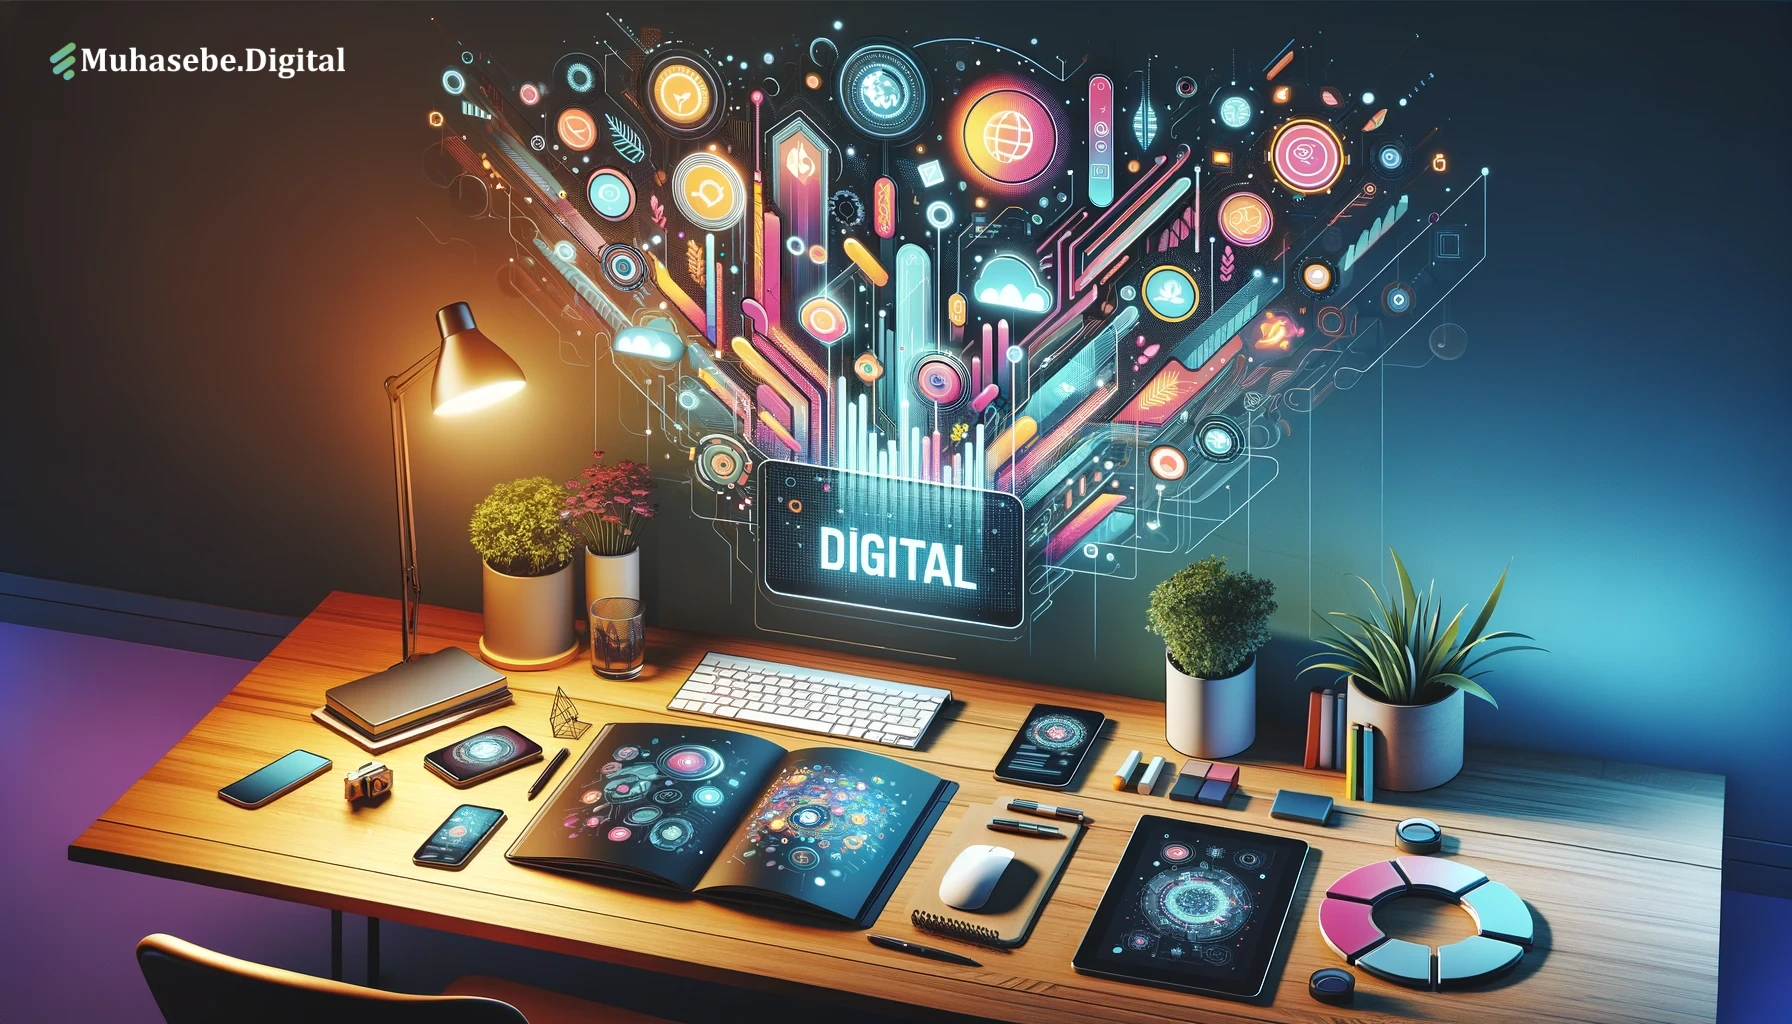 Muhasebe.Digital: İşletmenizin Dijital Muhasebe ve Finansal İşlem Partneri